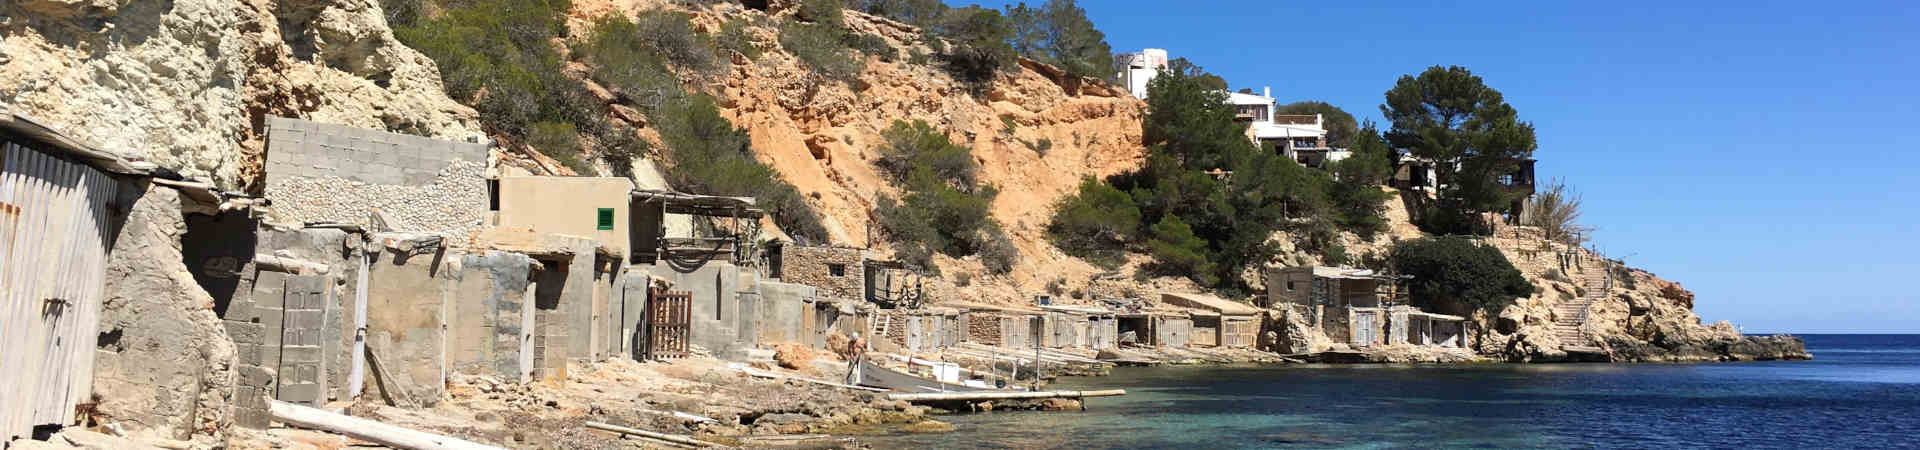 Ressourcenbild des Zielhafens Ibiza für die Fährverbindung Valencia - Ibiza